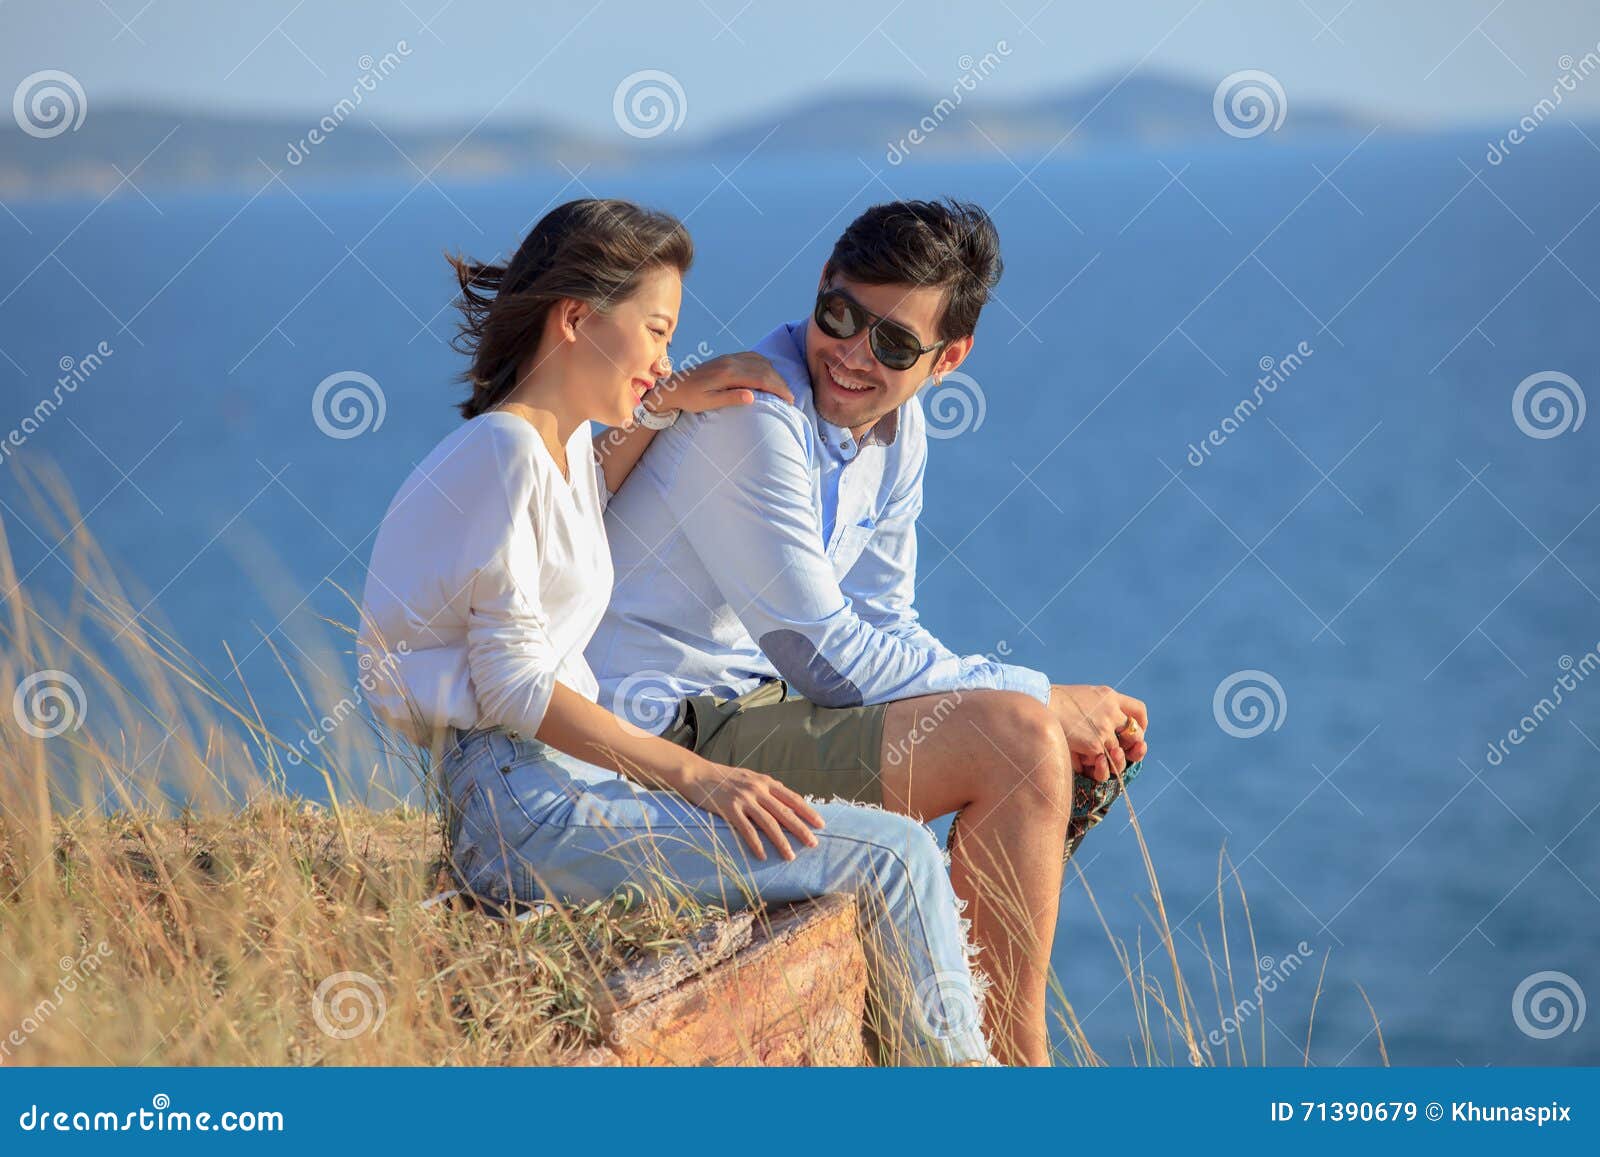 Расслабилась с другом. Мужчина и женщина спиной друг к другу. Расслабленная женщина с мужчиной. Счастье эмоция. Идеальная пара фото.